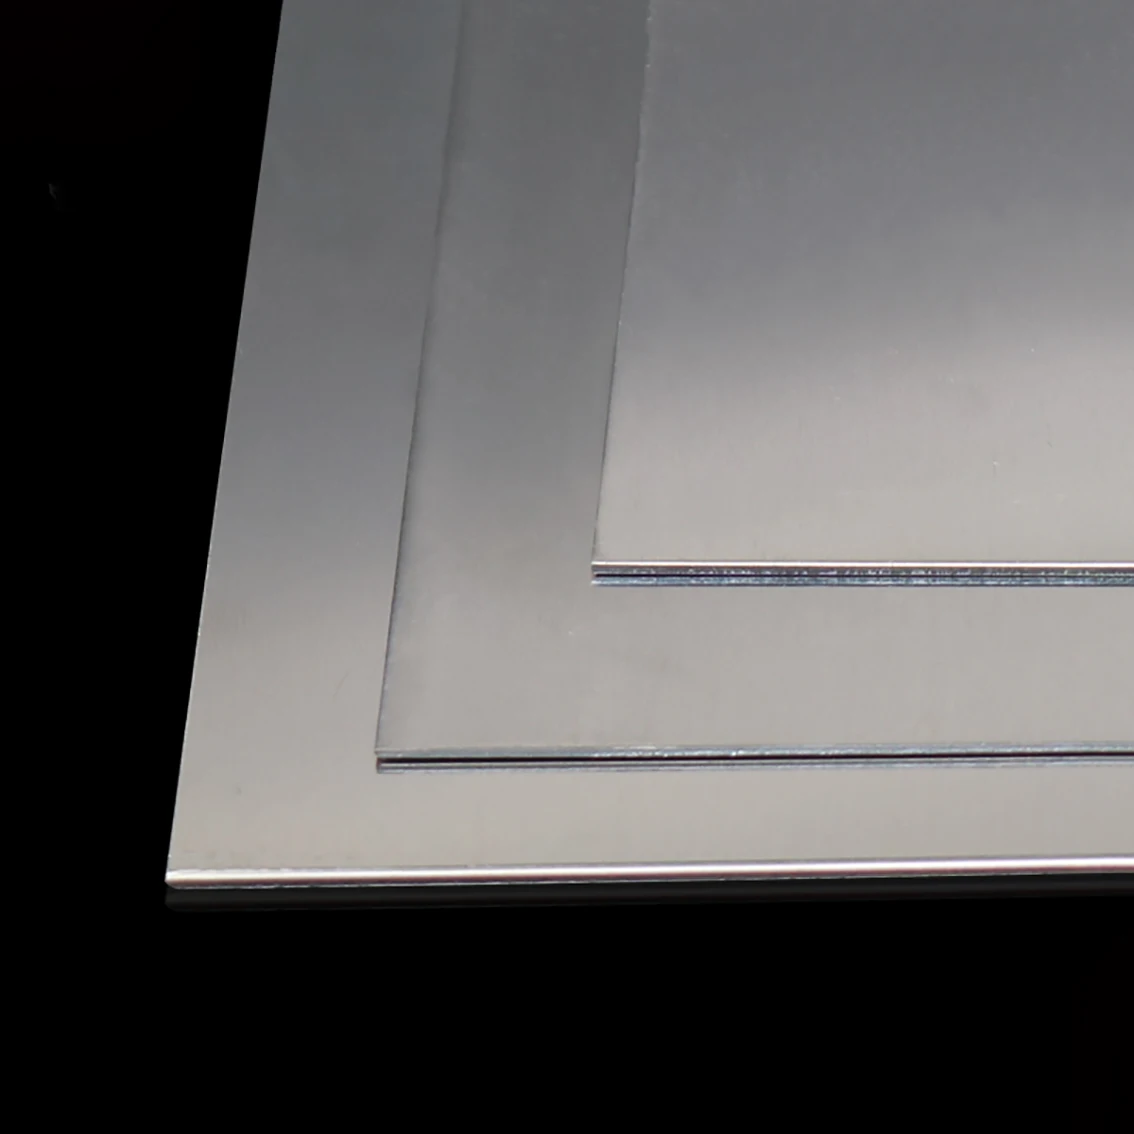 Plaque carrée polie en alliage d'aluminium, feuille optique, épaisseur fine  0.3mm 0.5mm 1mm 1.5mm 2mm 3mm 5mm 6mm 10mm, 1PC - AliExpress